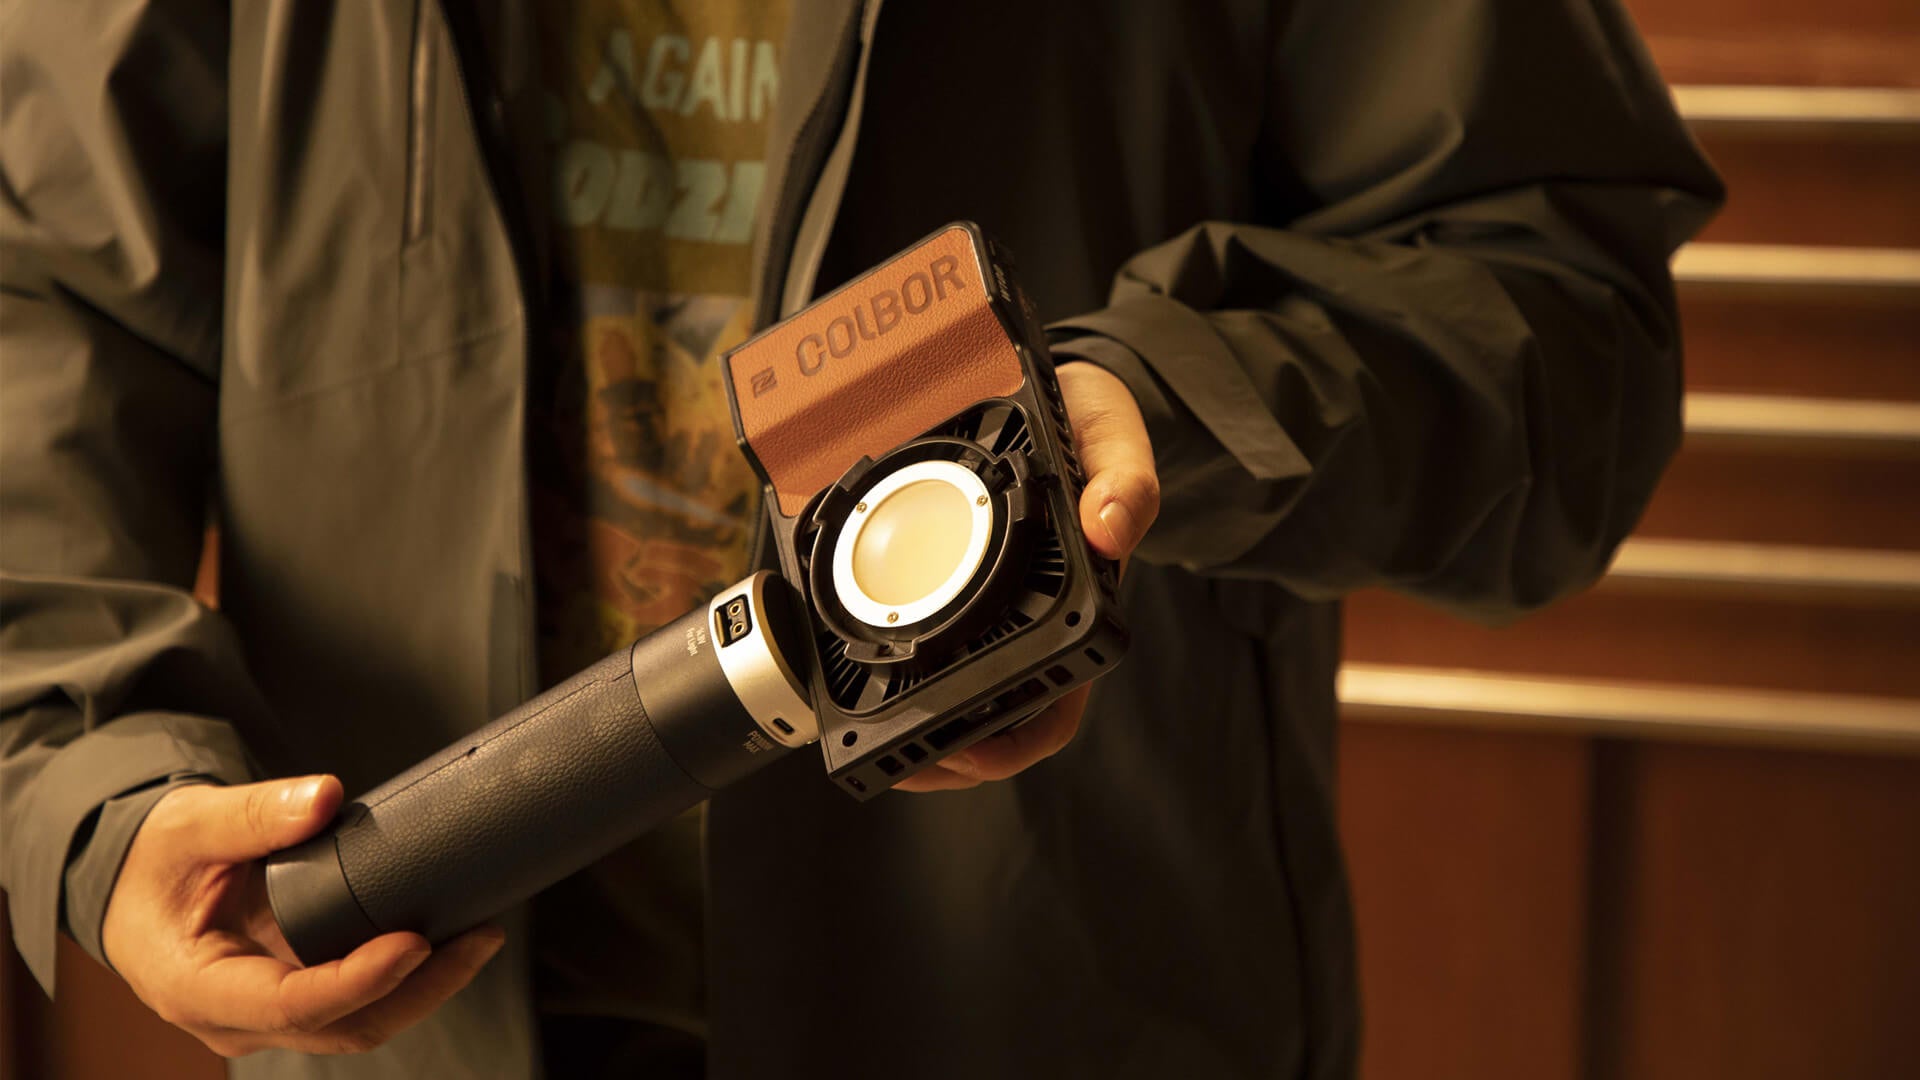 TikTok camera light: 3 best picks at COLBOR